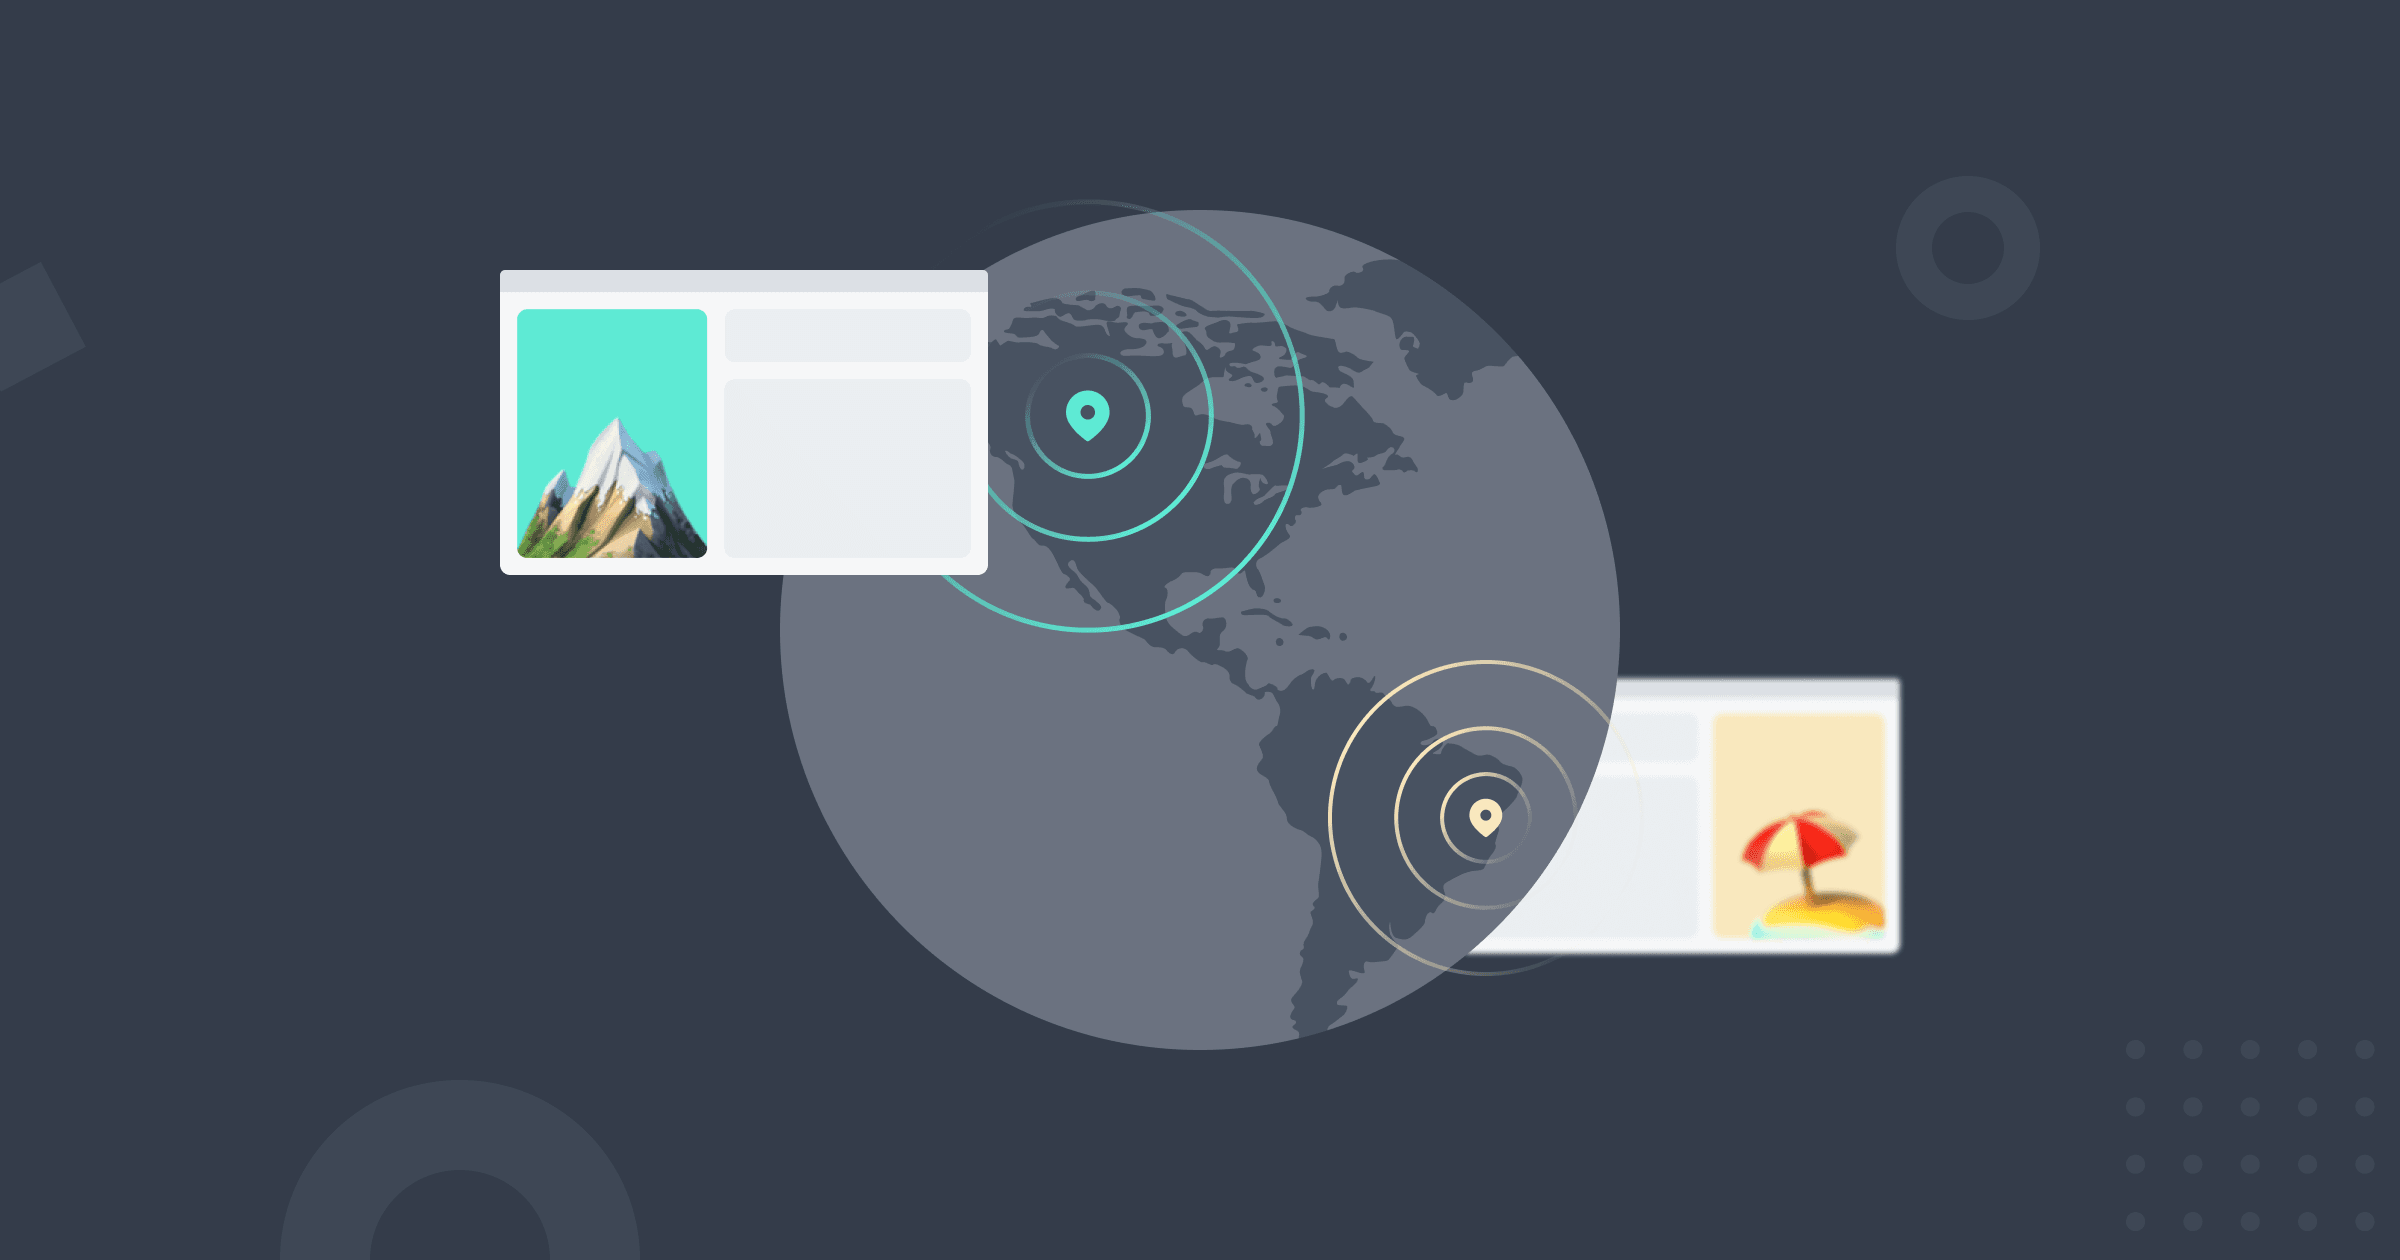 O mapa-múndi com dois pinos diferentes representando a localização dos usuários em dois países diferentes, cada um ao lado de um wireframe de site com uma paisagem específica.